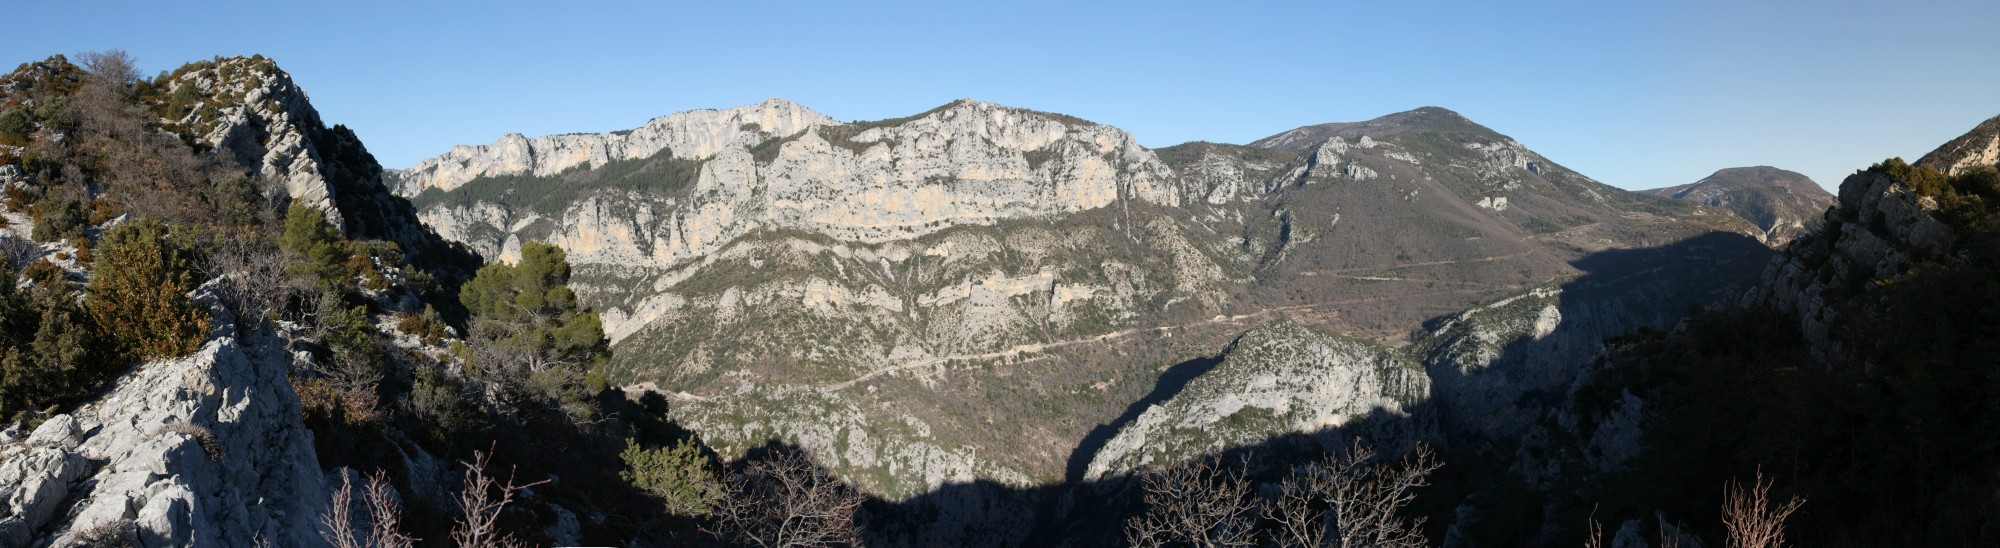 Gorges du Verdon panorama